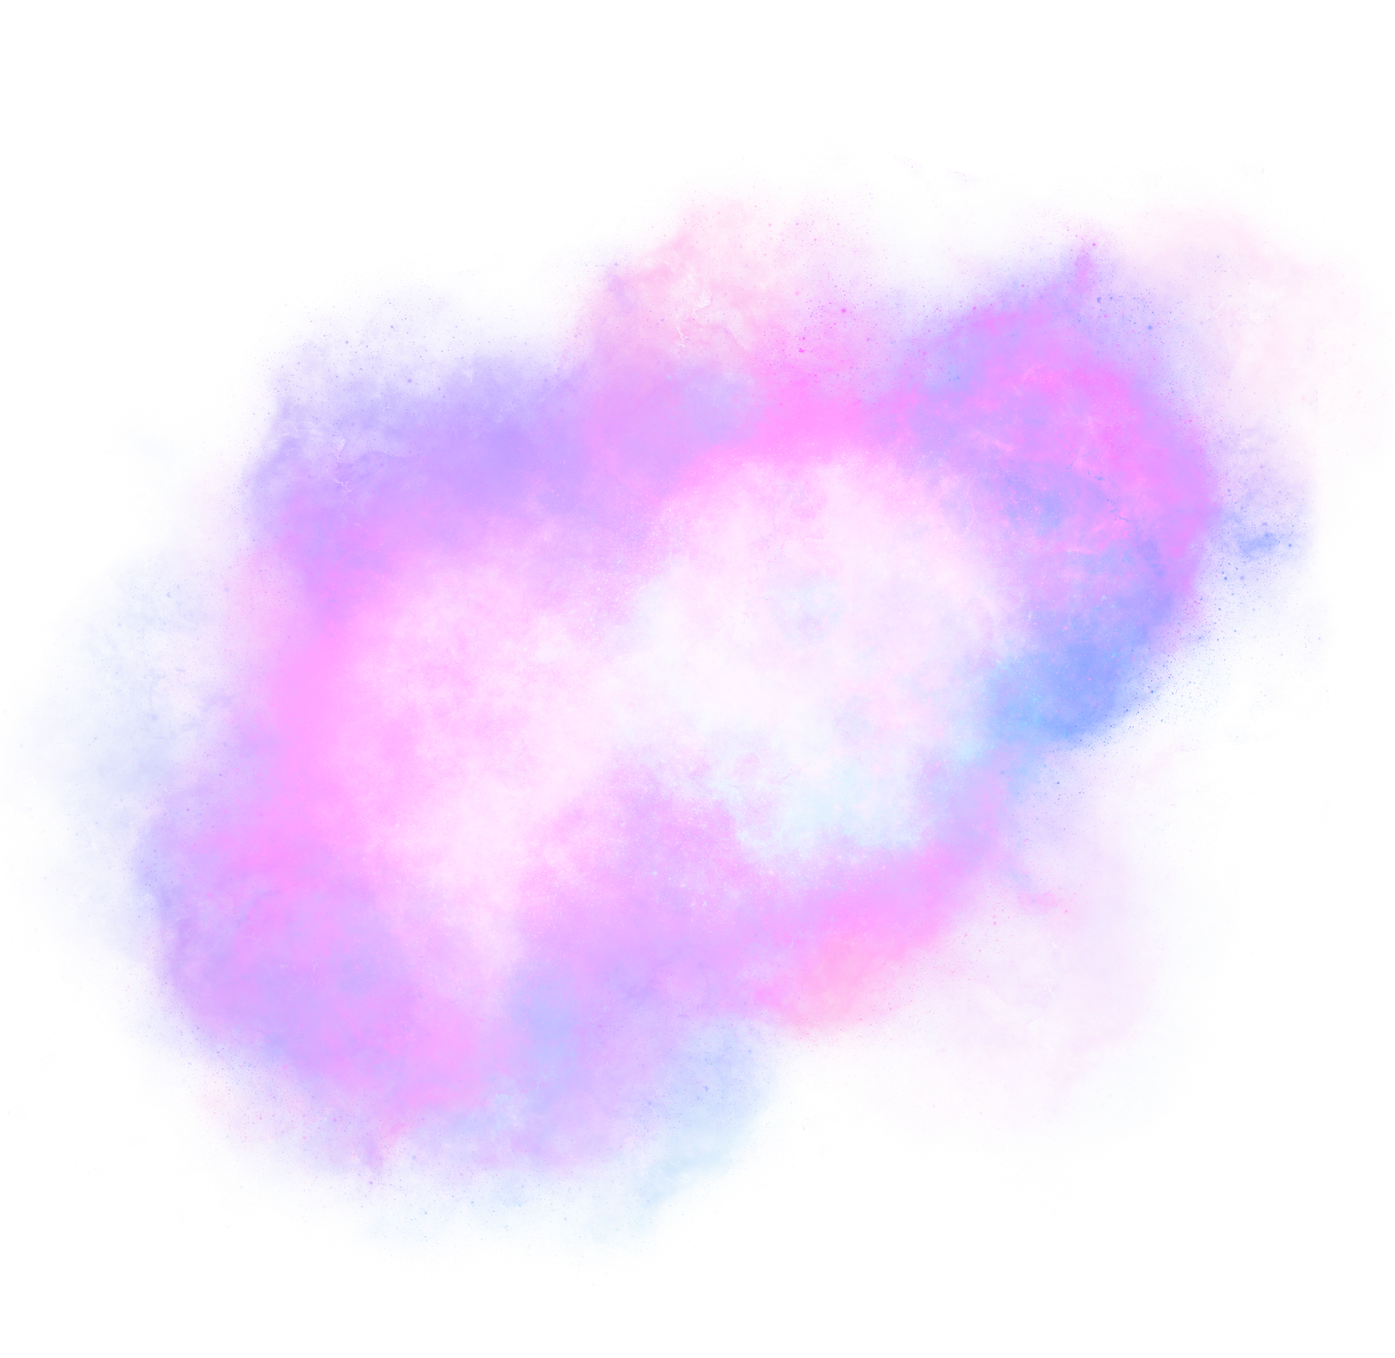 Purple glowing nebula